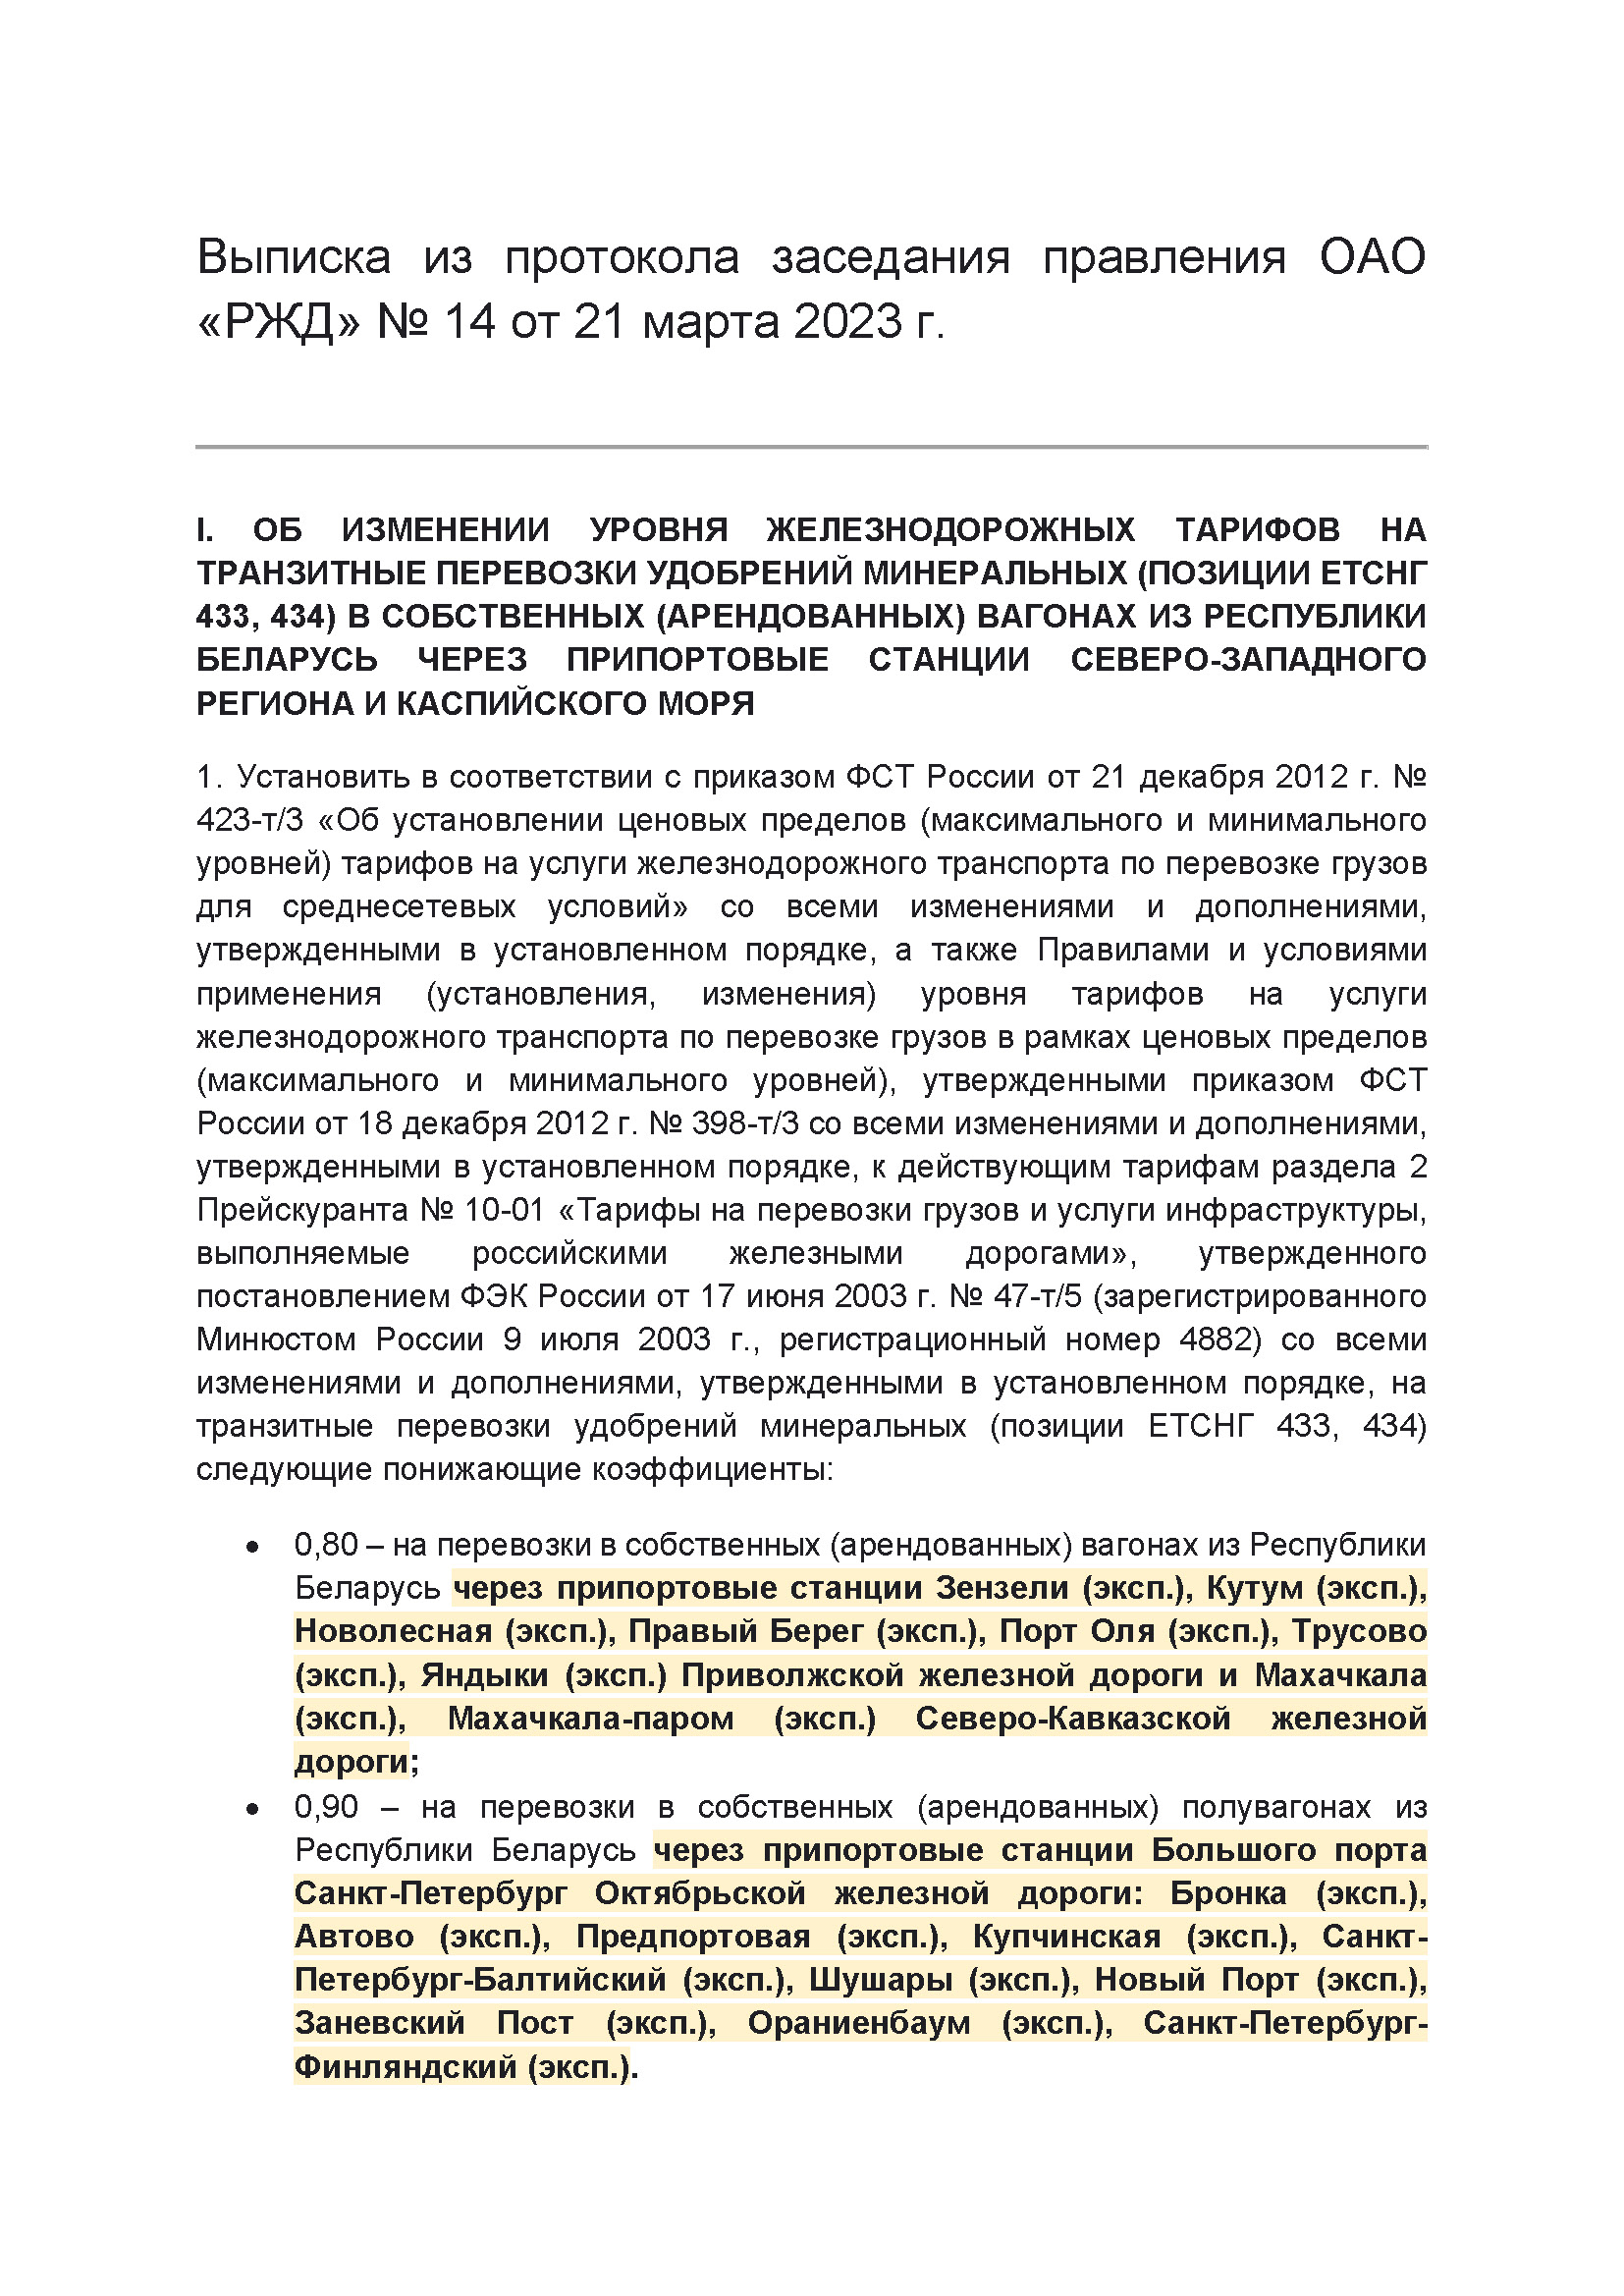 Выписка из протокола заседания правления ОАО РЖД №14 от 21 марта 2023 г. (Страница 1)